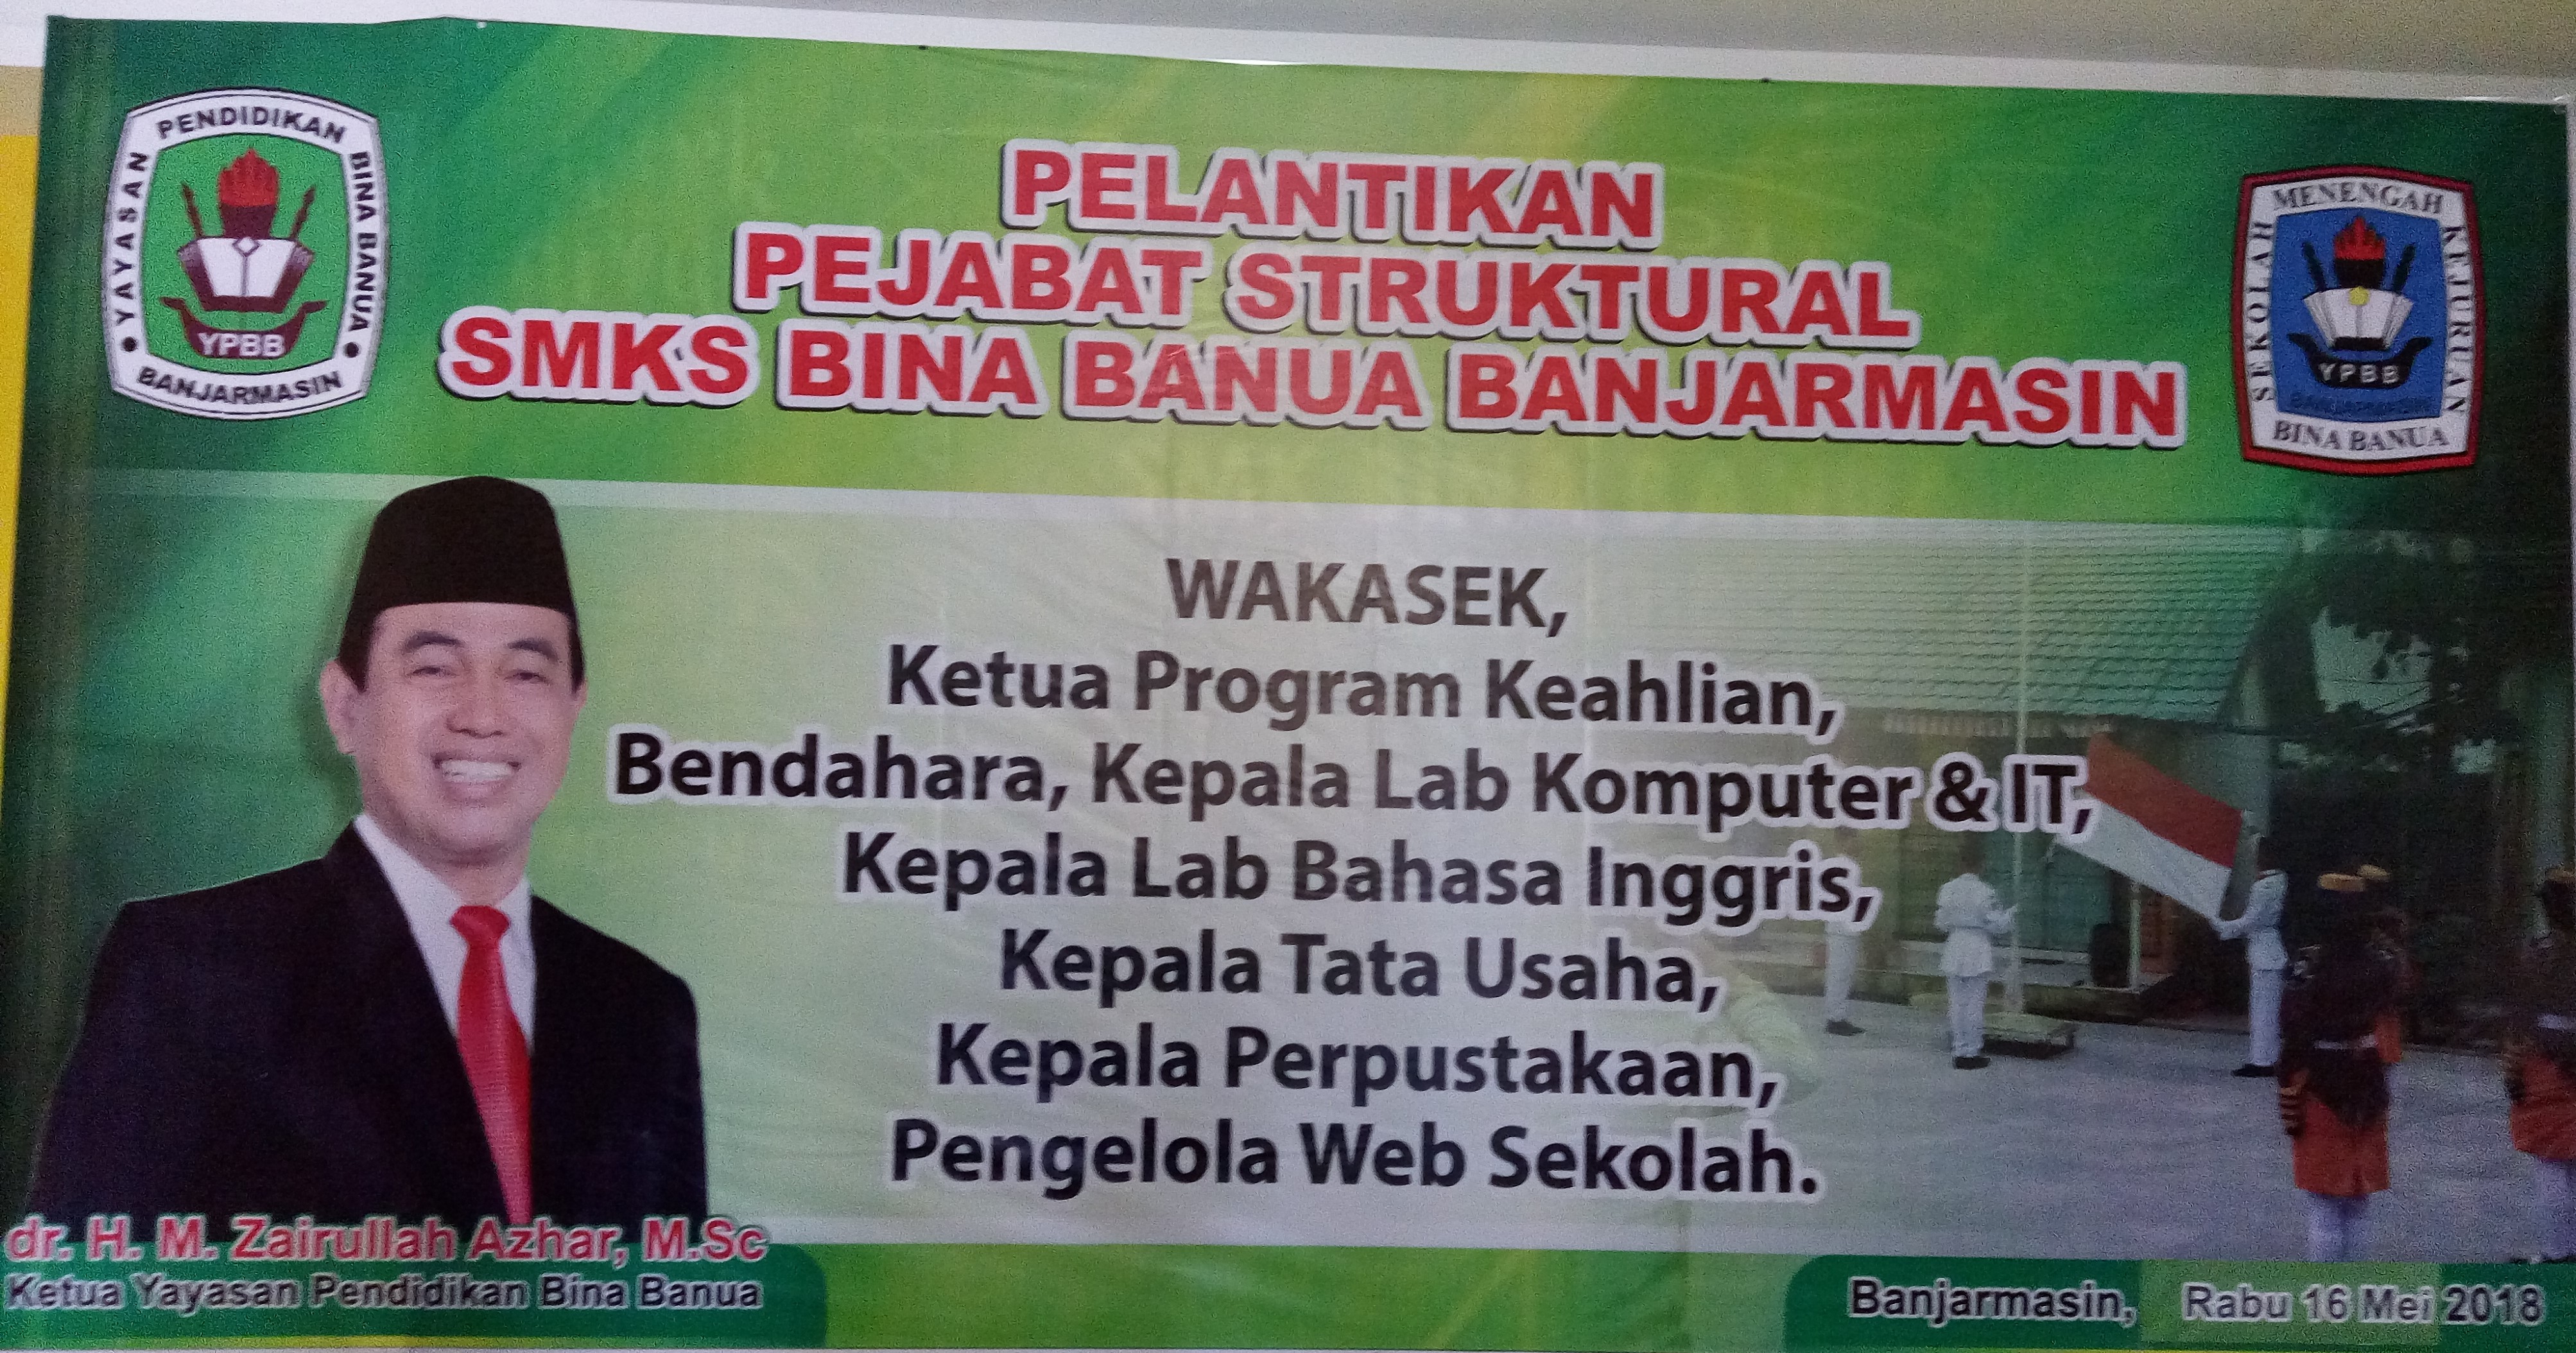 Pelantikan Pejabat Struktural SMKS Bina Banua Banjarmasin